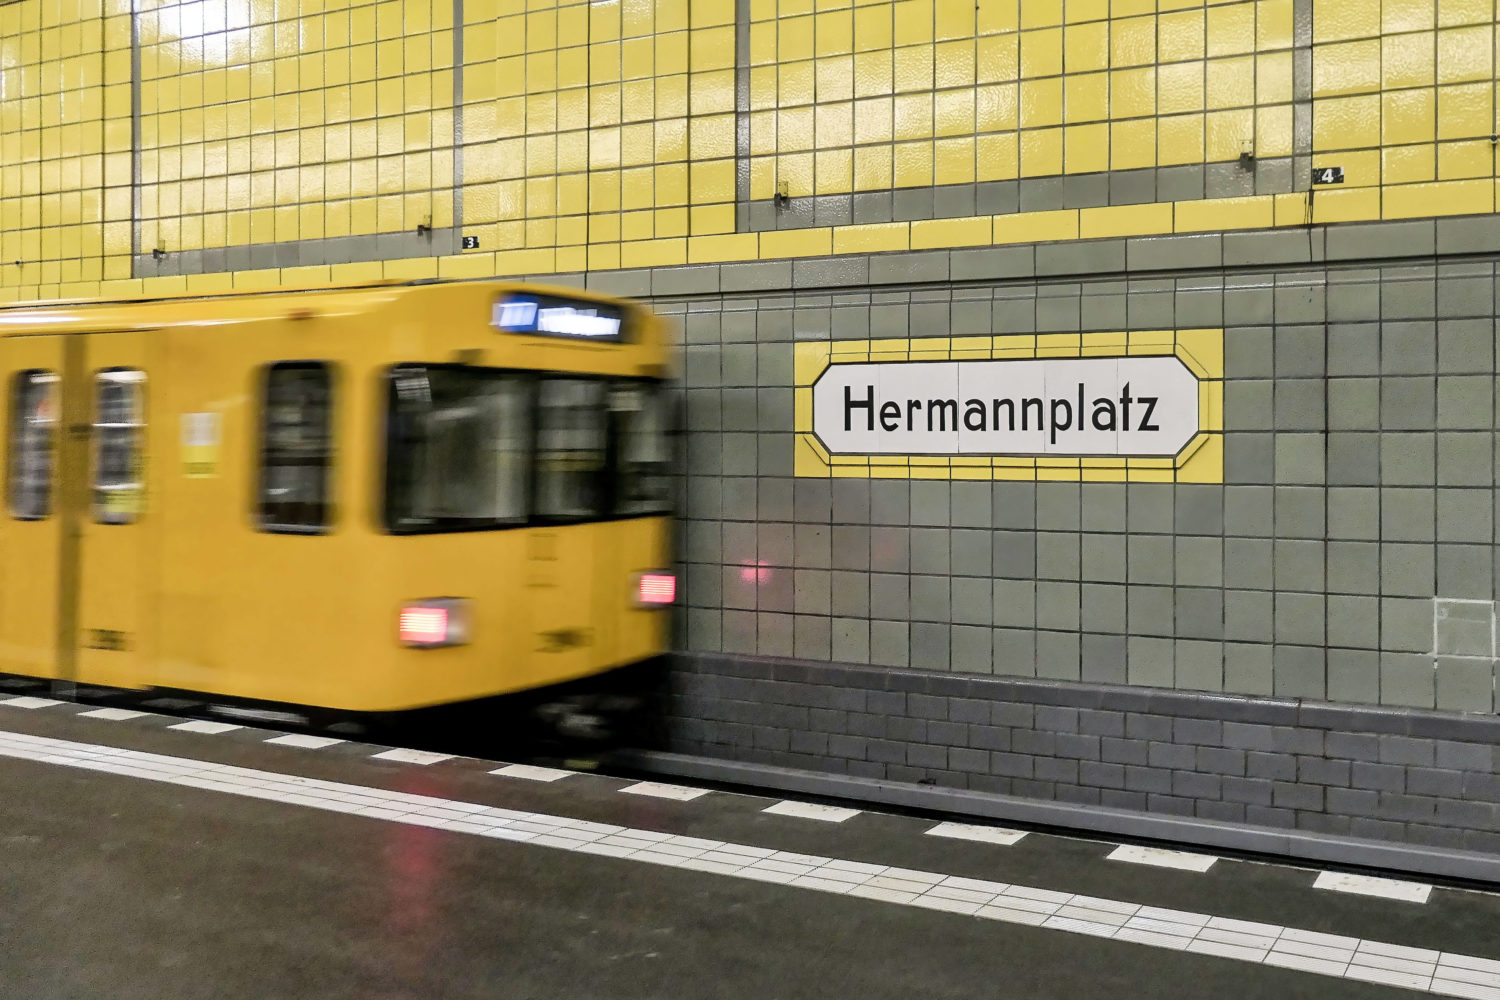 Klassisch gestaltet: der U-Bahnhof Hermannplatz, immer gut erkennbar an den gelben Kacheln. Foto: Imago/Travel-Stock-Image